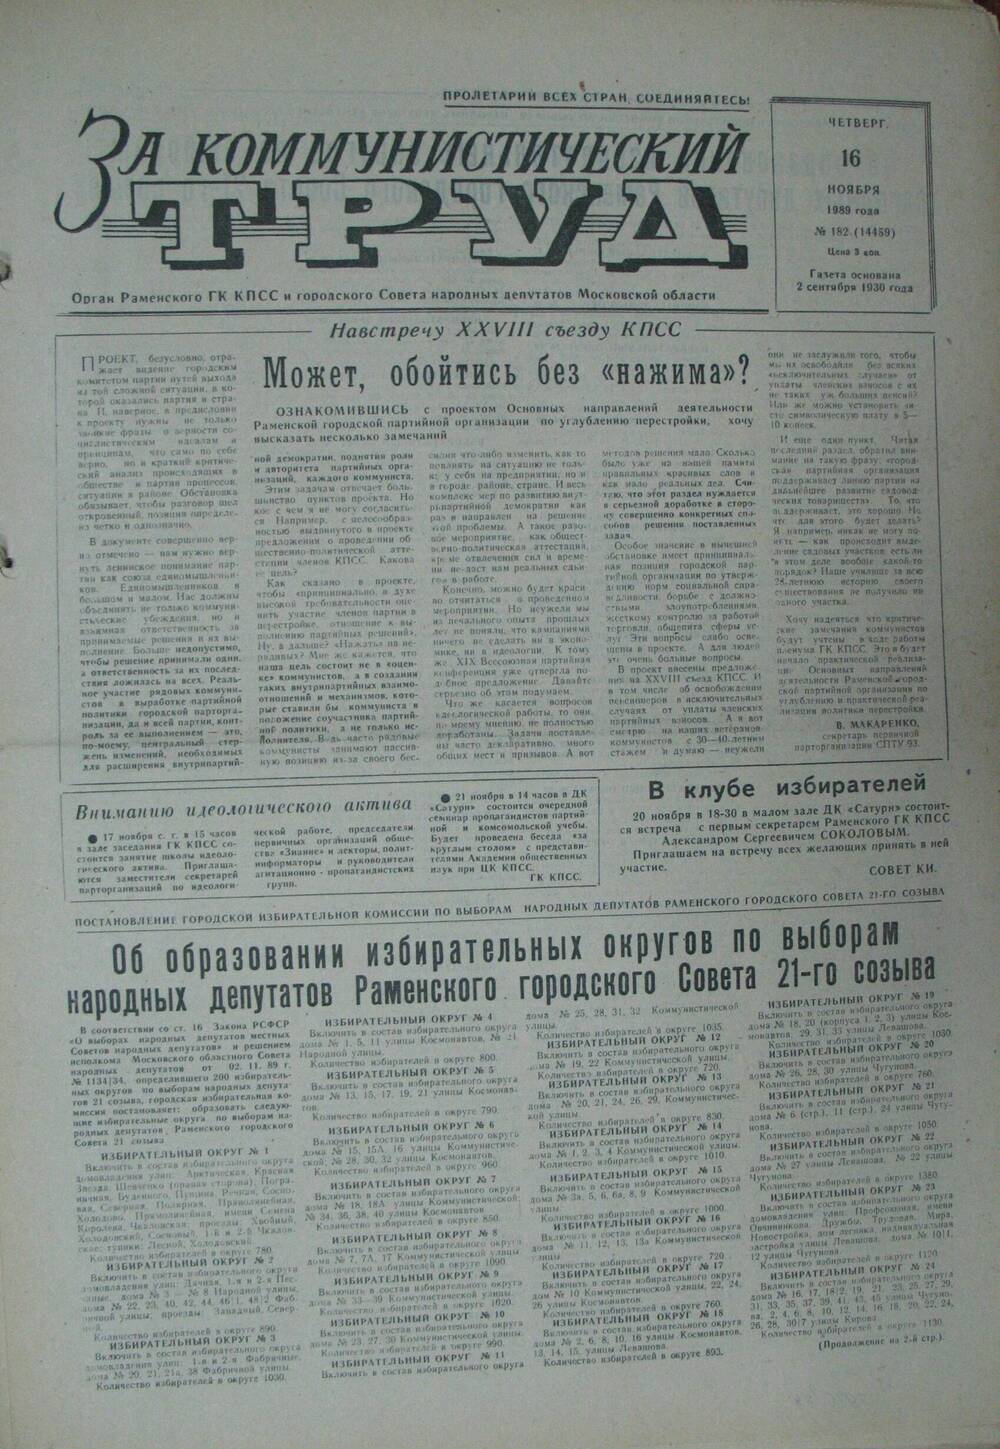 За коммунистический труд, газета № 182 от 16 ноября 1989г